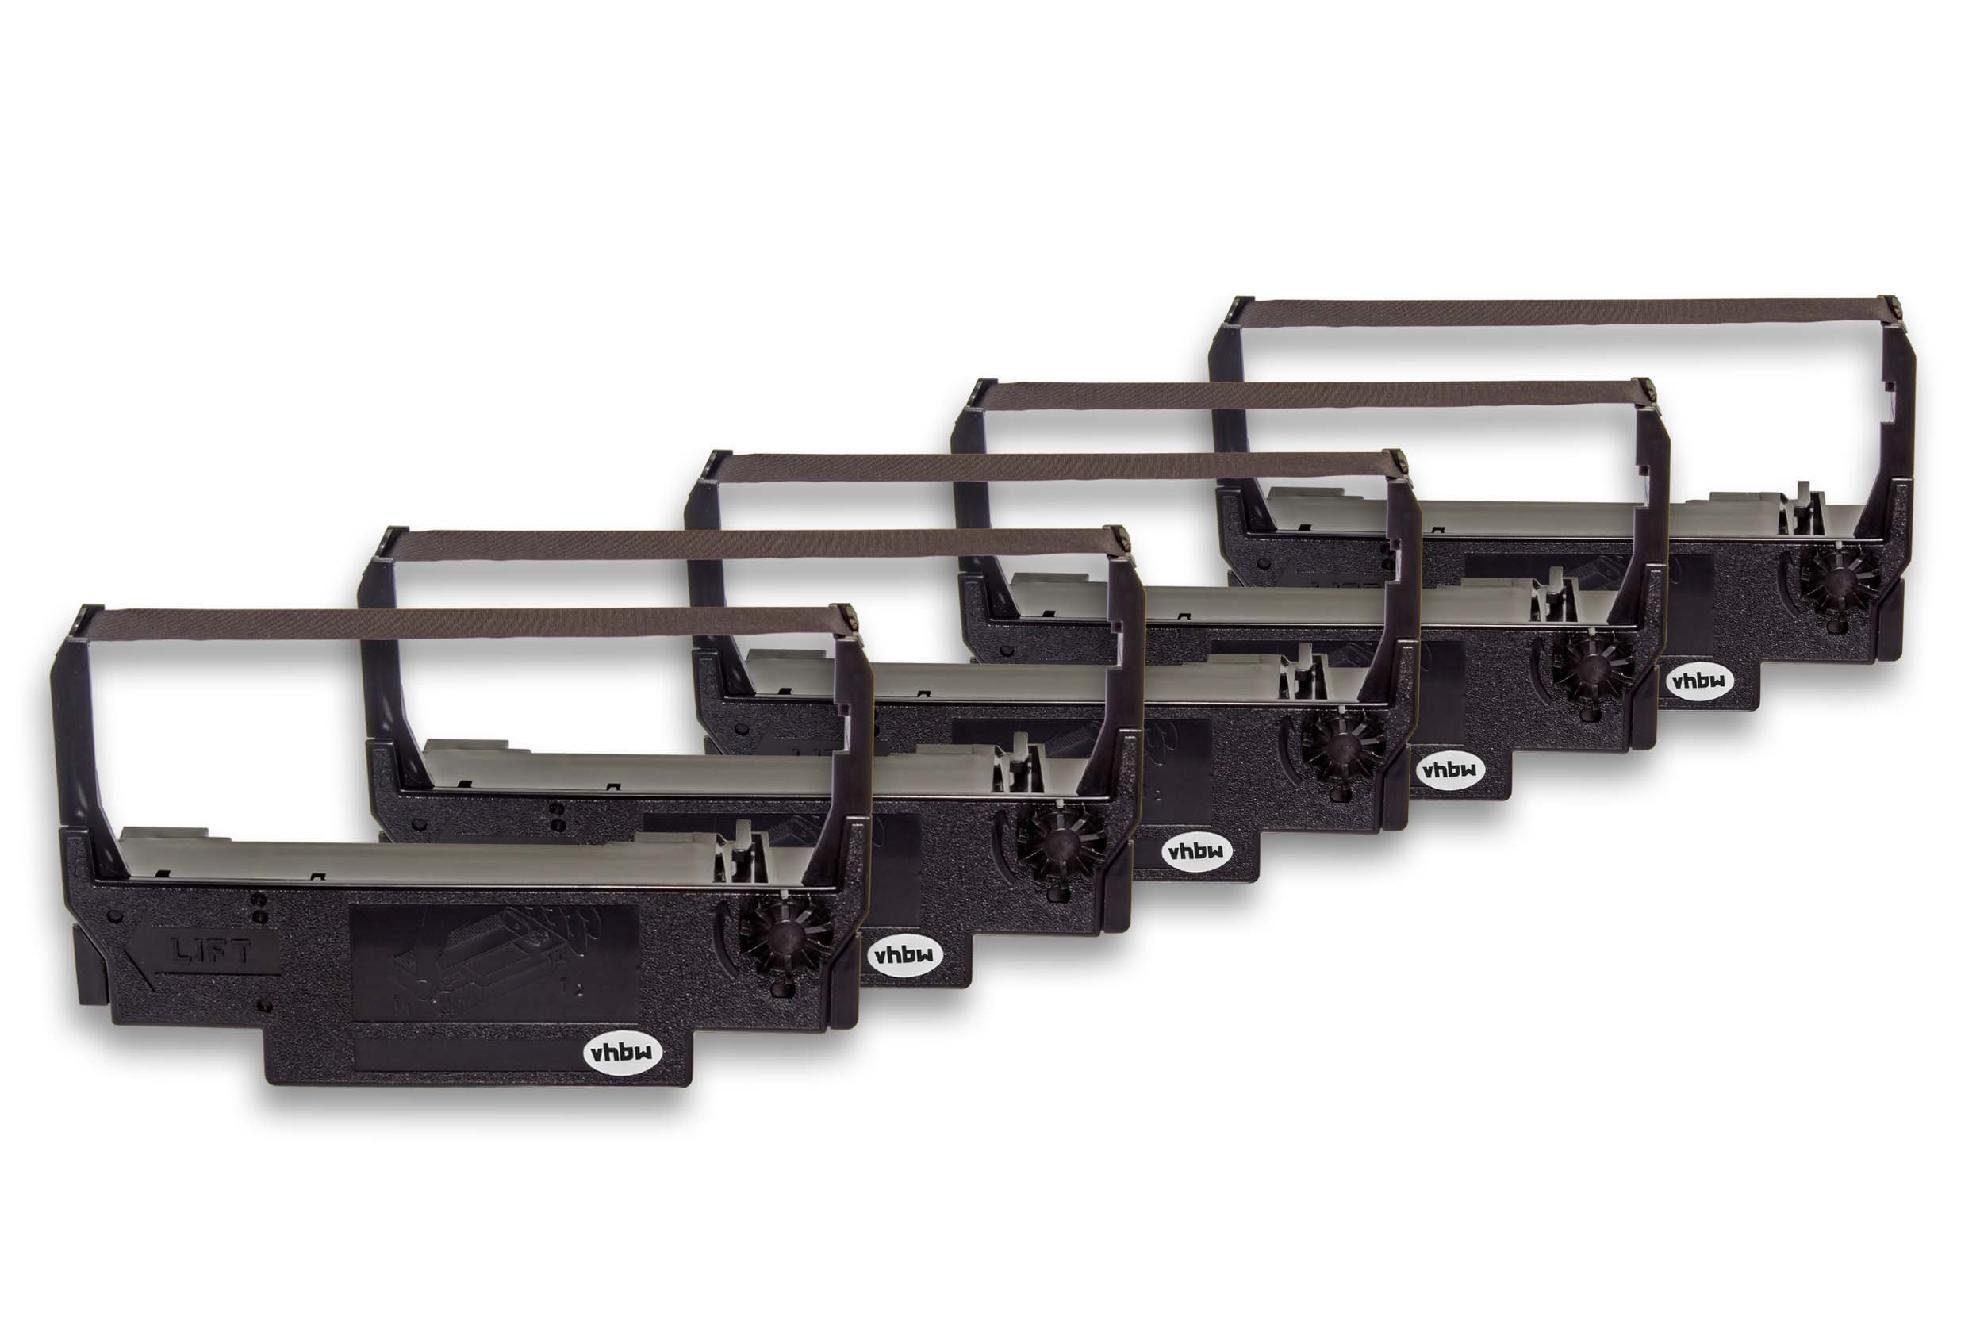 Nadeldrucker vhbw Drucker Orient Kopierer passend Beschriftungsband, BTP-M270, BTP-M300 für BTP-M280, &